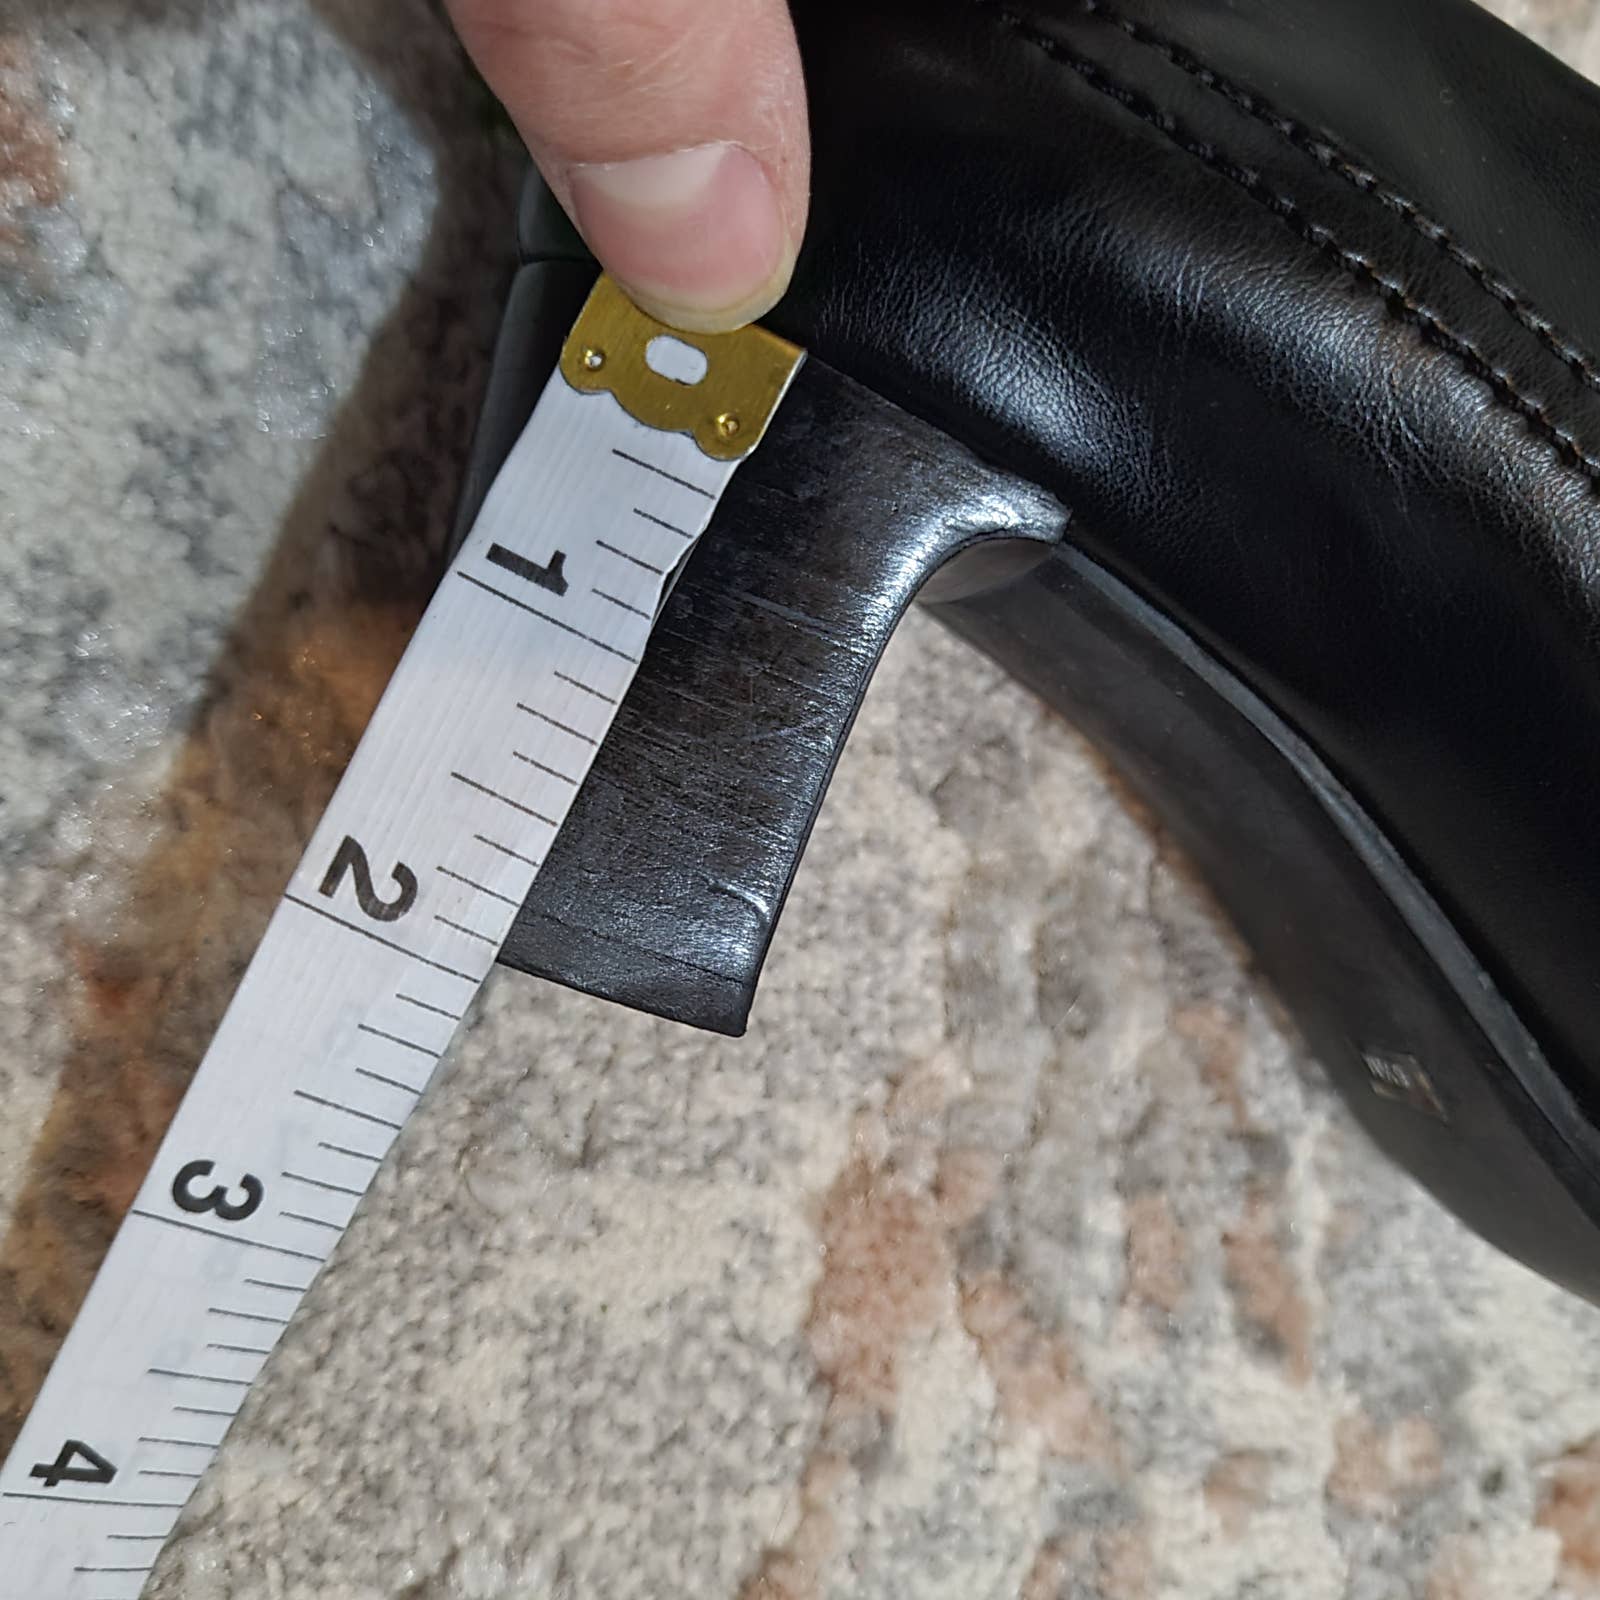 Franco Sarto Black Leather Bootie Heels - Size 6.5Markita's ClosetFranco Sarto